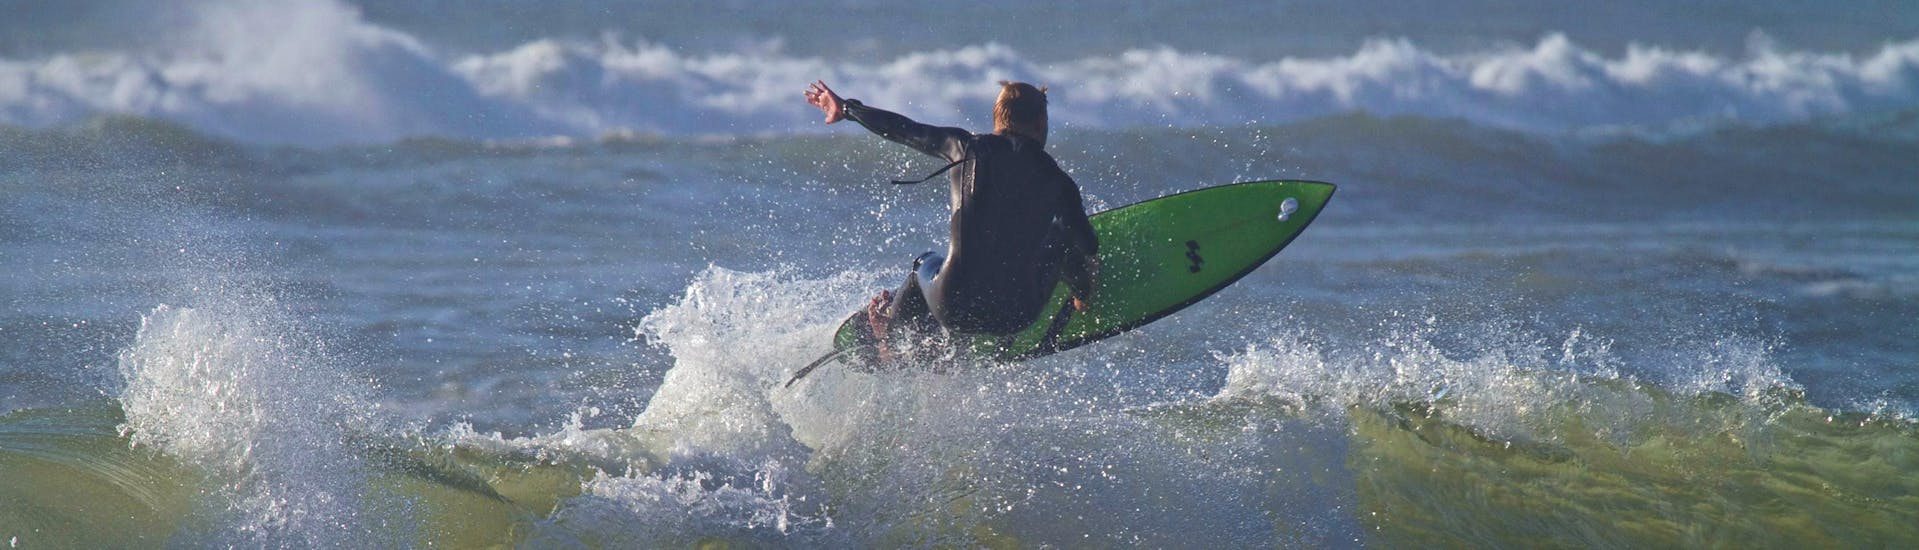 Un surfista monta una ola durante sus clases privadas de surf con Capbreton Surfer School.